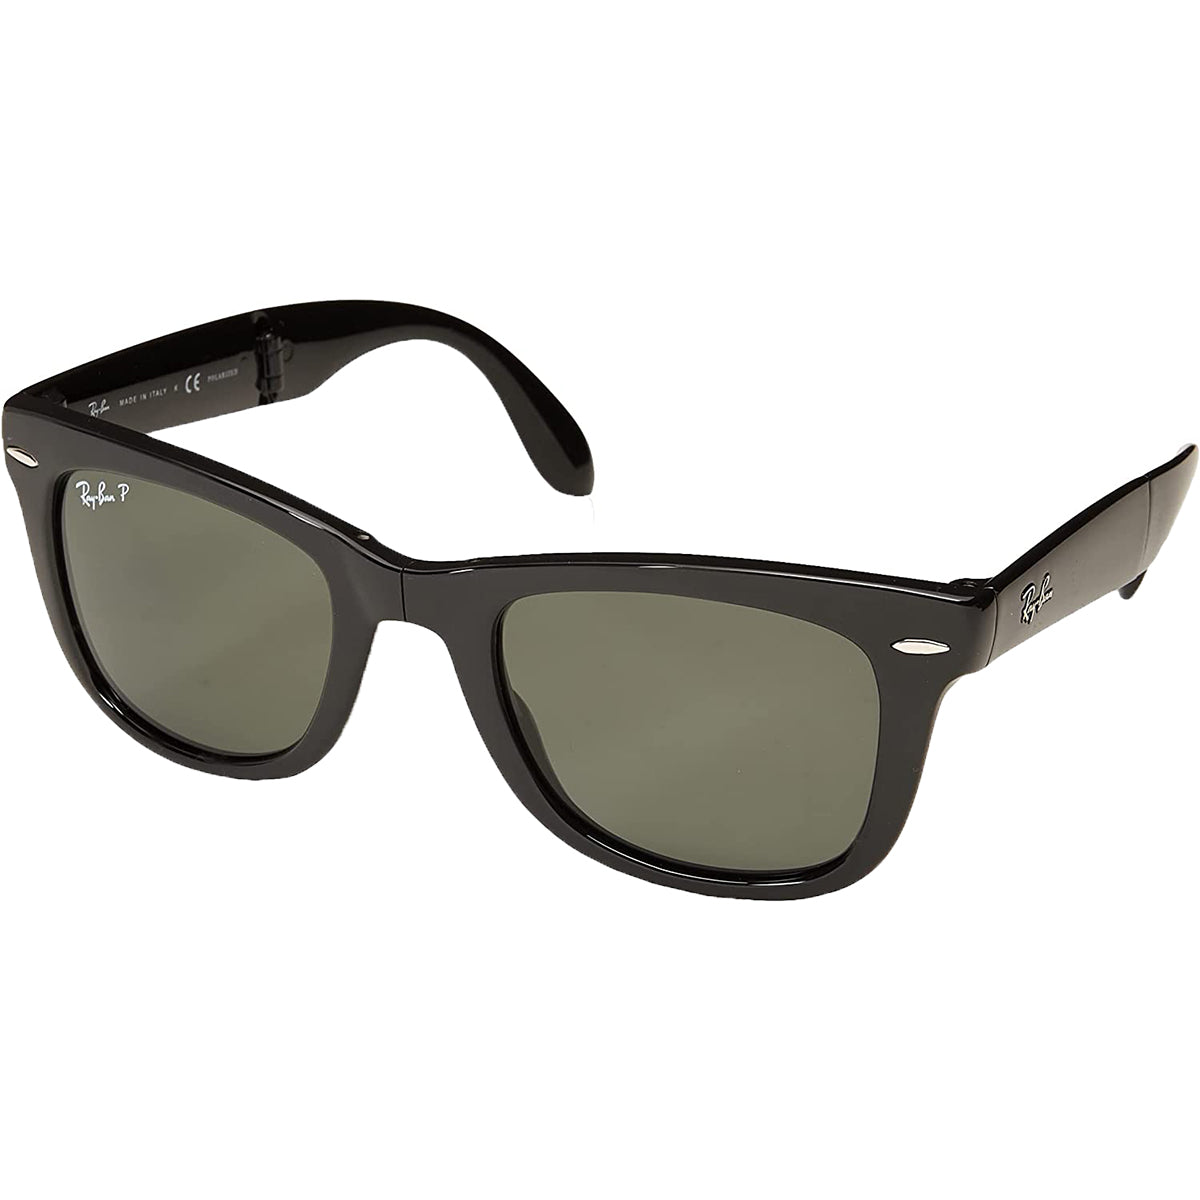 Ray-Ban Wayfarer Folding Classic Adult Lifestyle Sunglasses